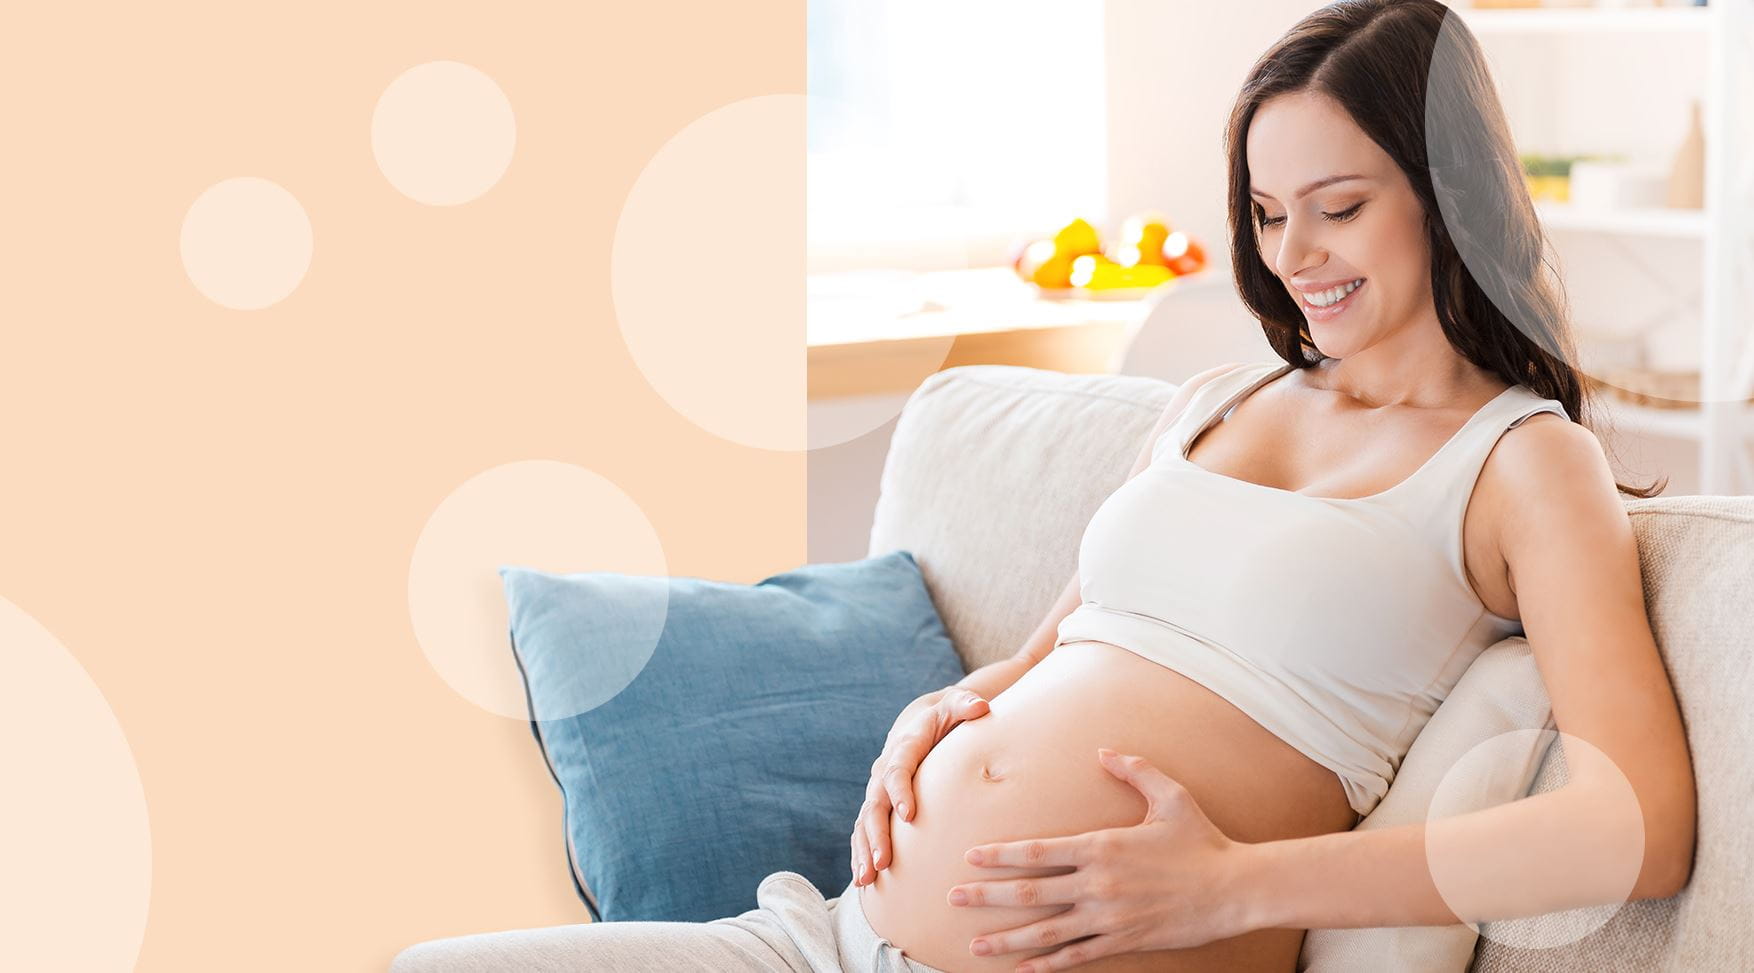 Zmiany skórne i rozstępy w ciąży – jak ich uniknąć?